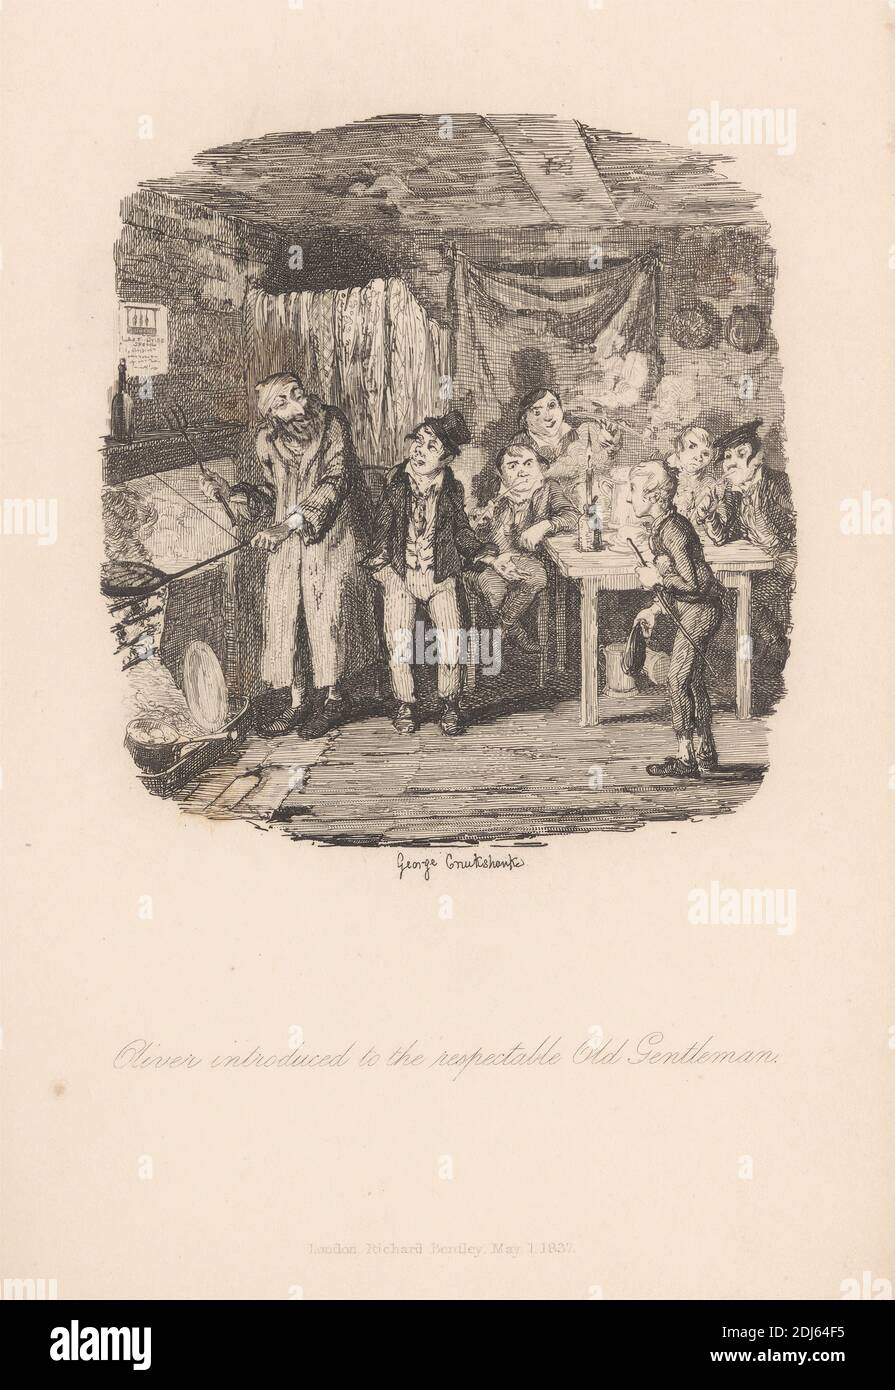 Oliver est présenté au respectable Old Gentleman, imprimé par George Cruikshank, 1792–1878, British, 1837, gravure de ligne sur papier de vélin moyen, légèrement texturé, crème Banque D'Images